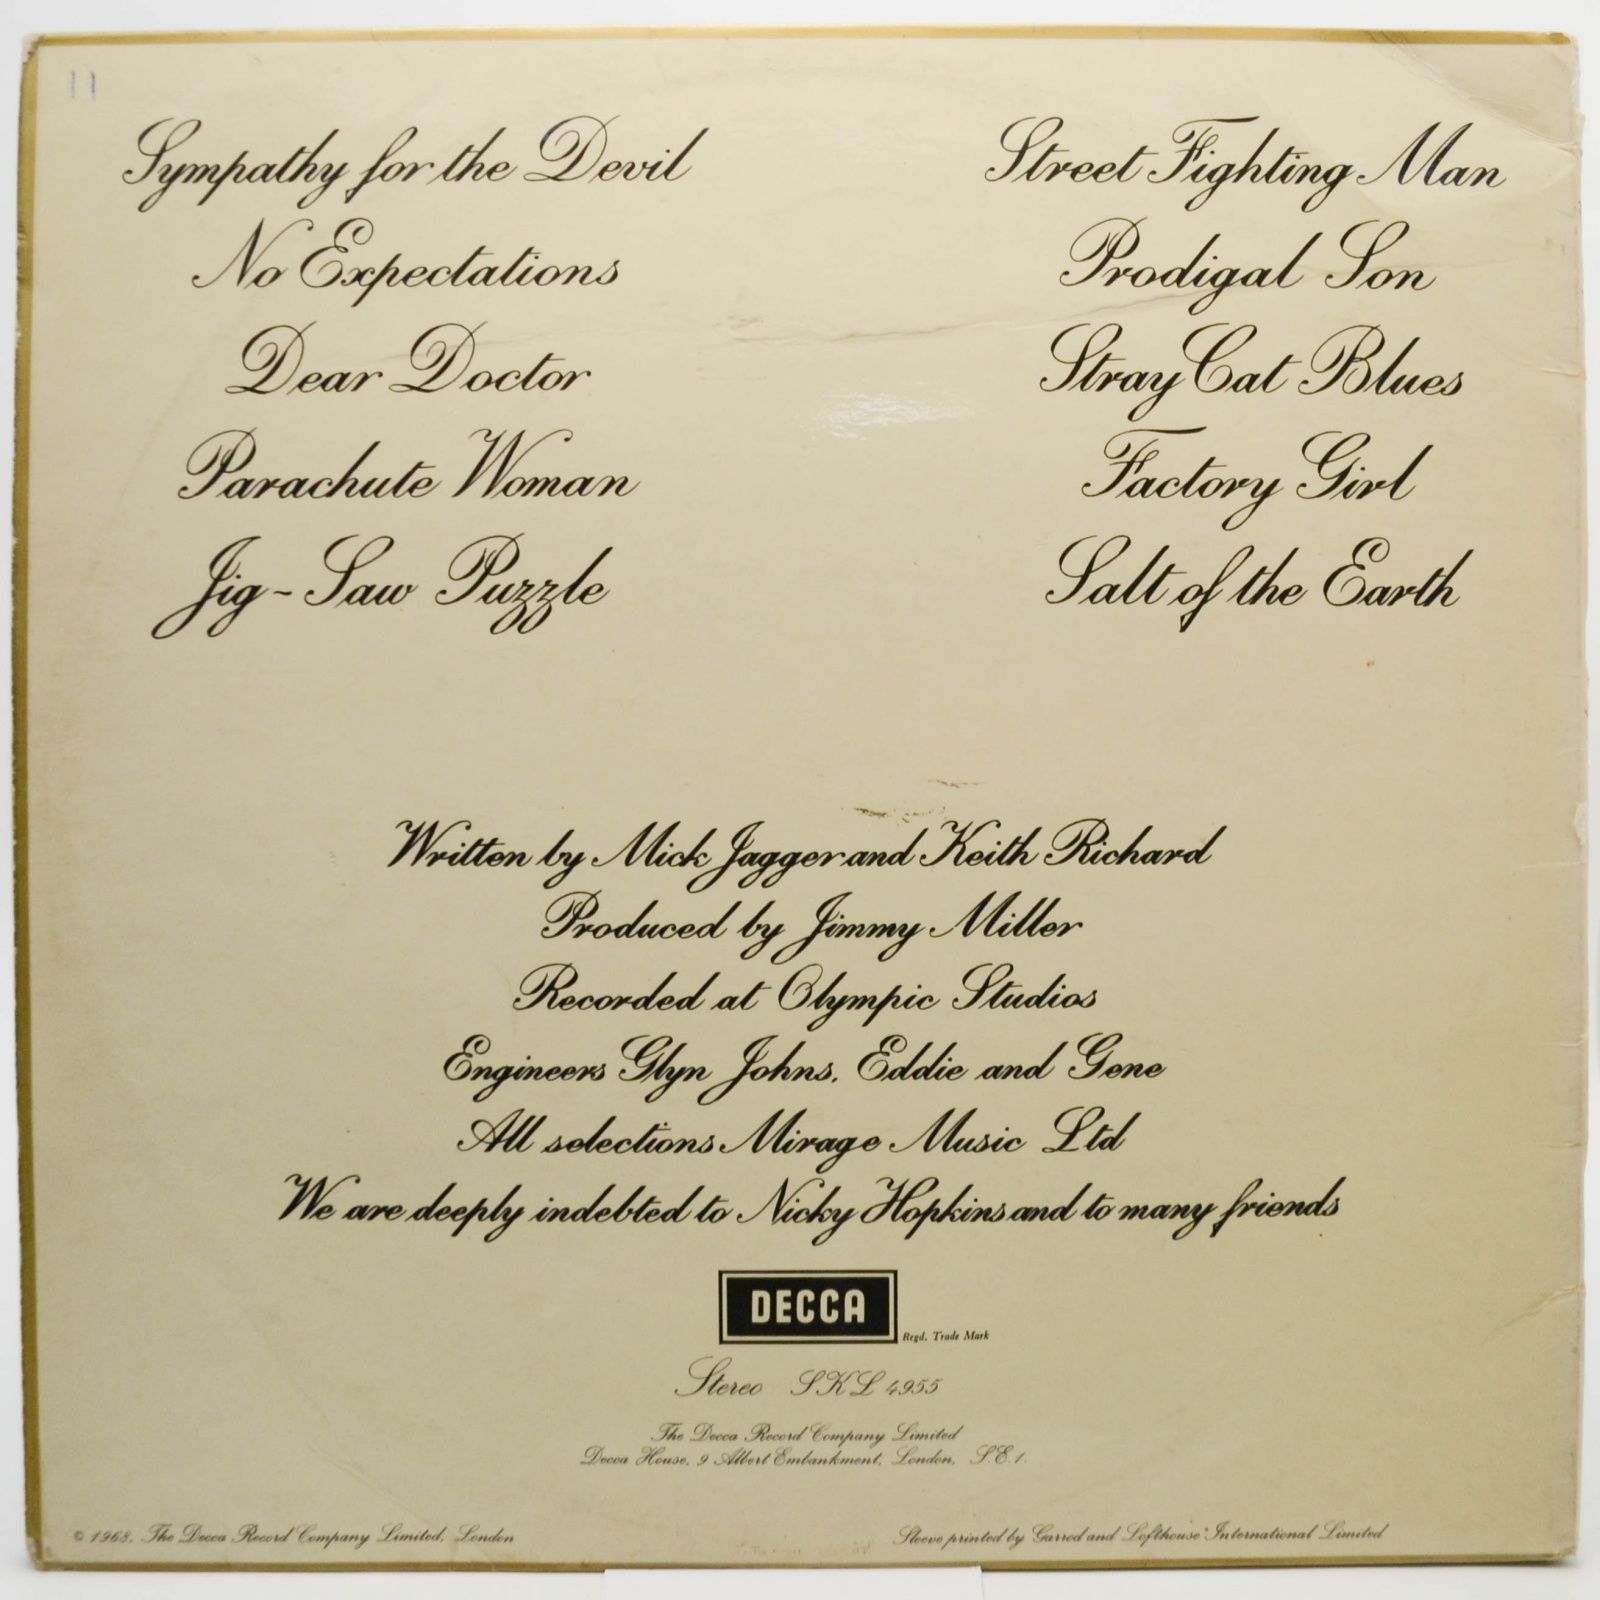 Rolling Stones — Beggars Banquet (UK), 1968